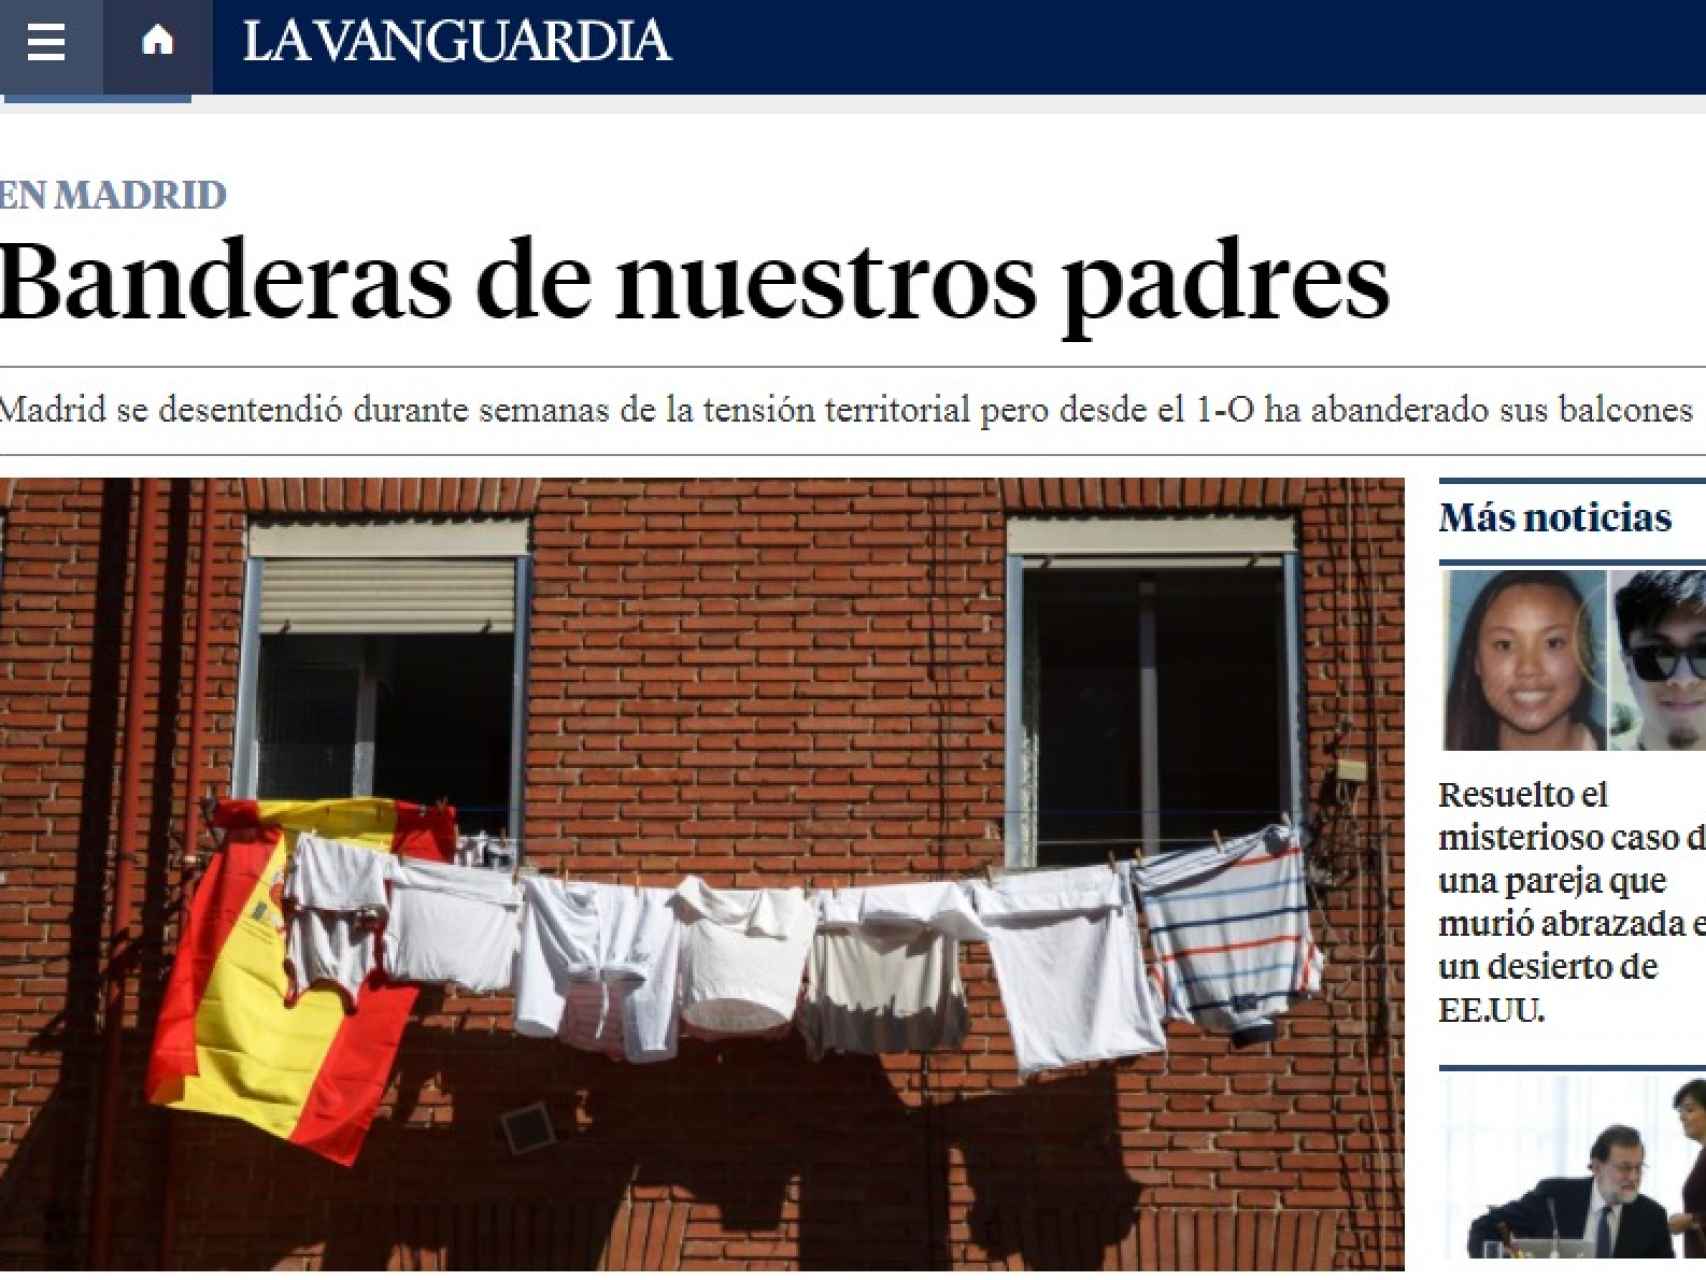 Imagen que ilustra el artículo de La Vanguardia.